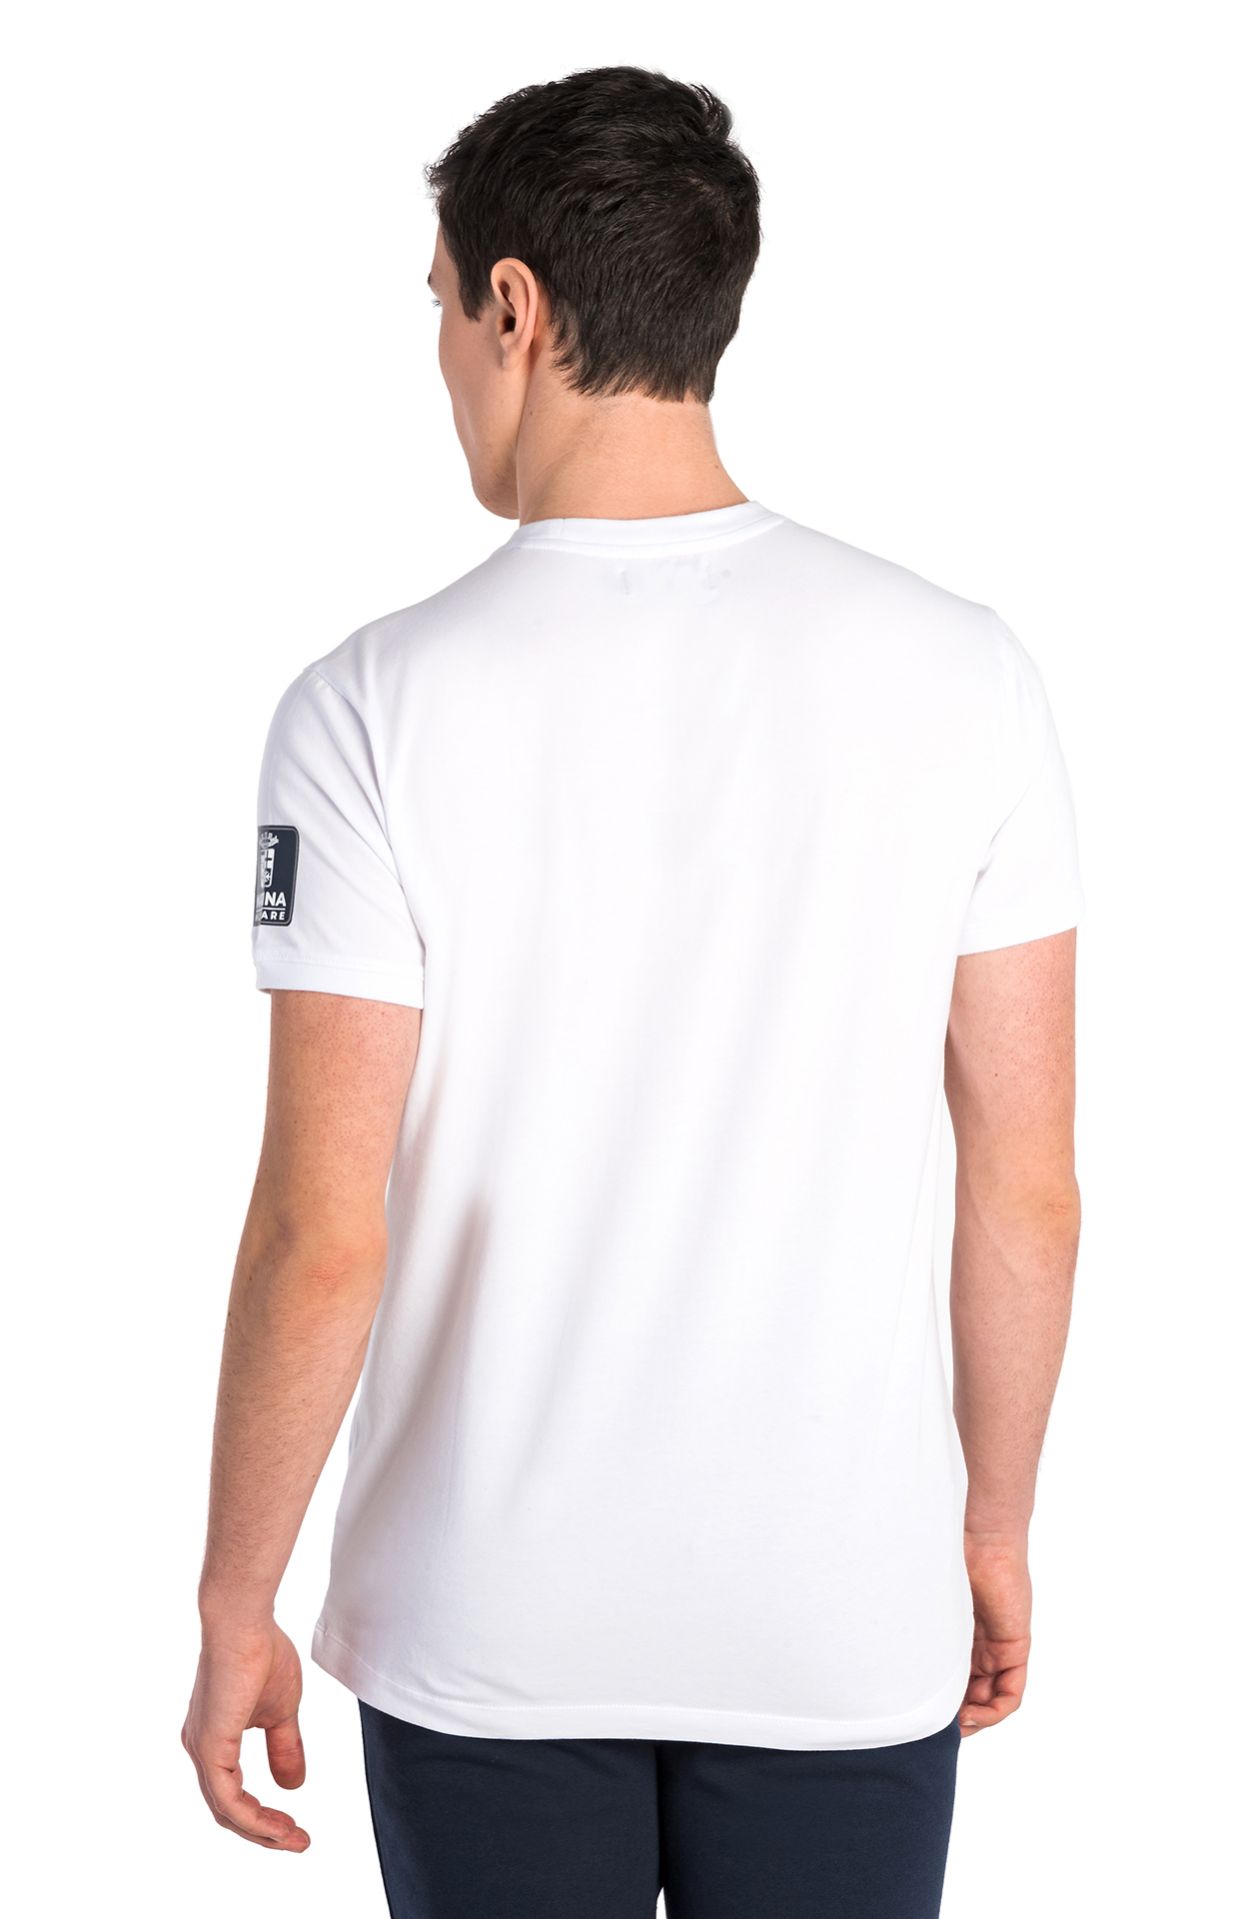 Segeln-Team-T-Shirt